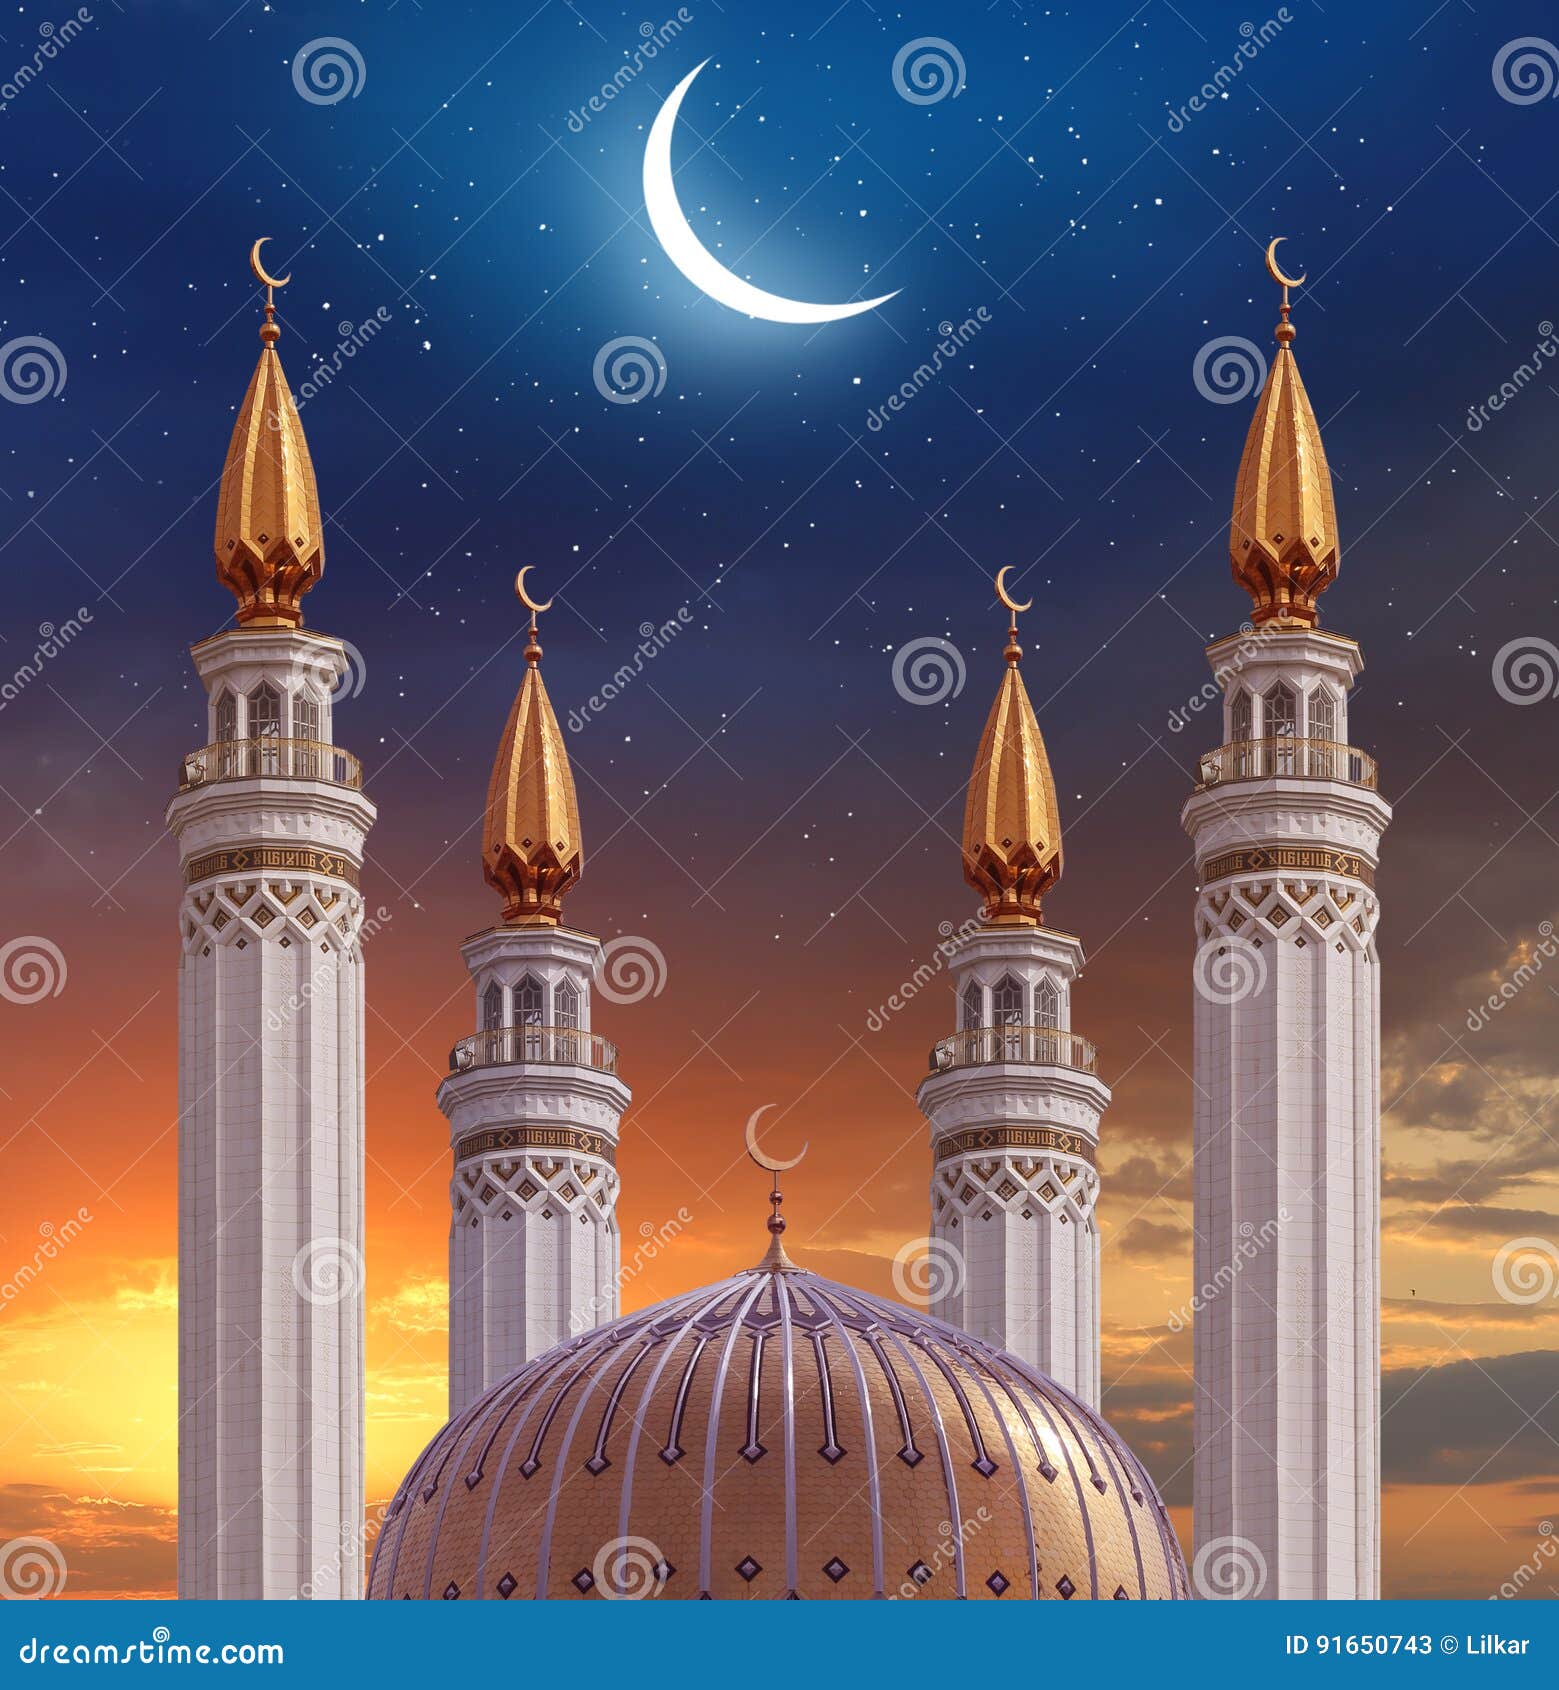 islamic greeting eid mubarak cards for muslim holidays.eid-ul-a